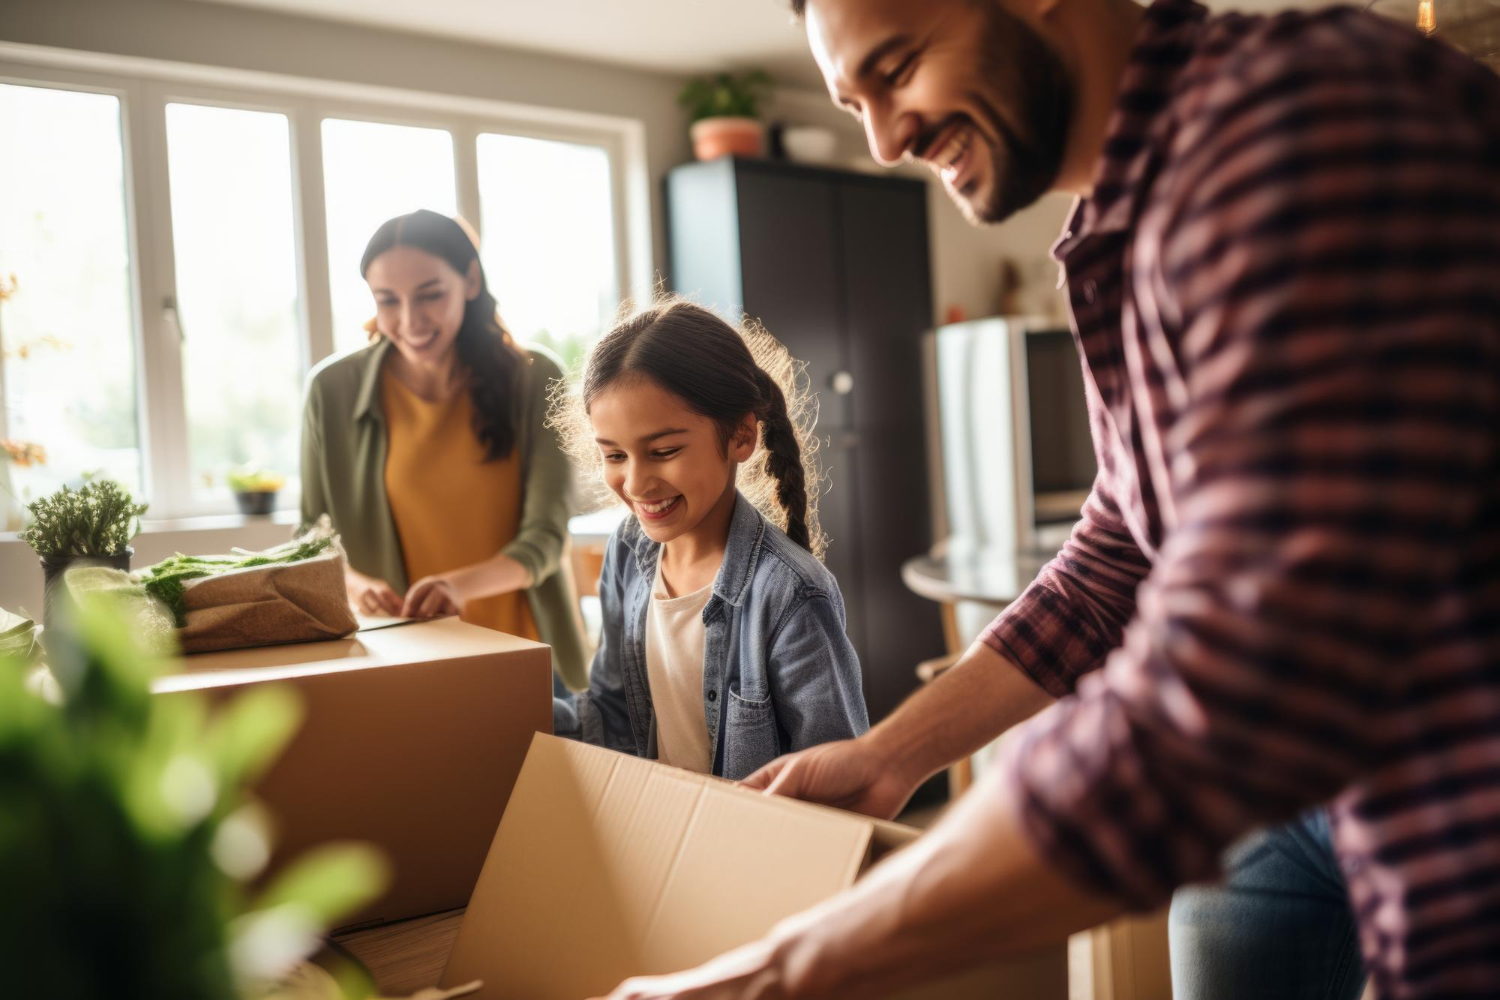 "Une famille souriante rassemblant des cartons et des meubles pour déménager lors d'un déménagement dans le cadre d'une garde alternée"